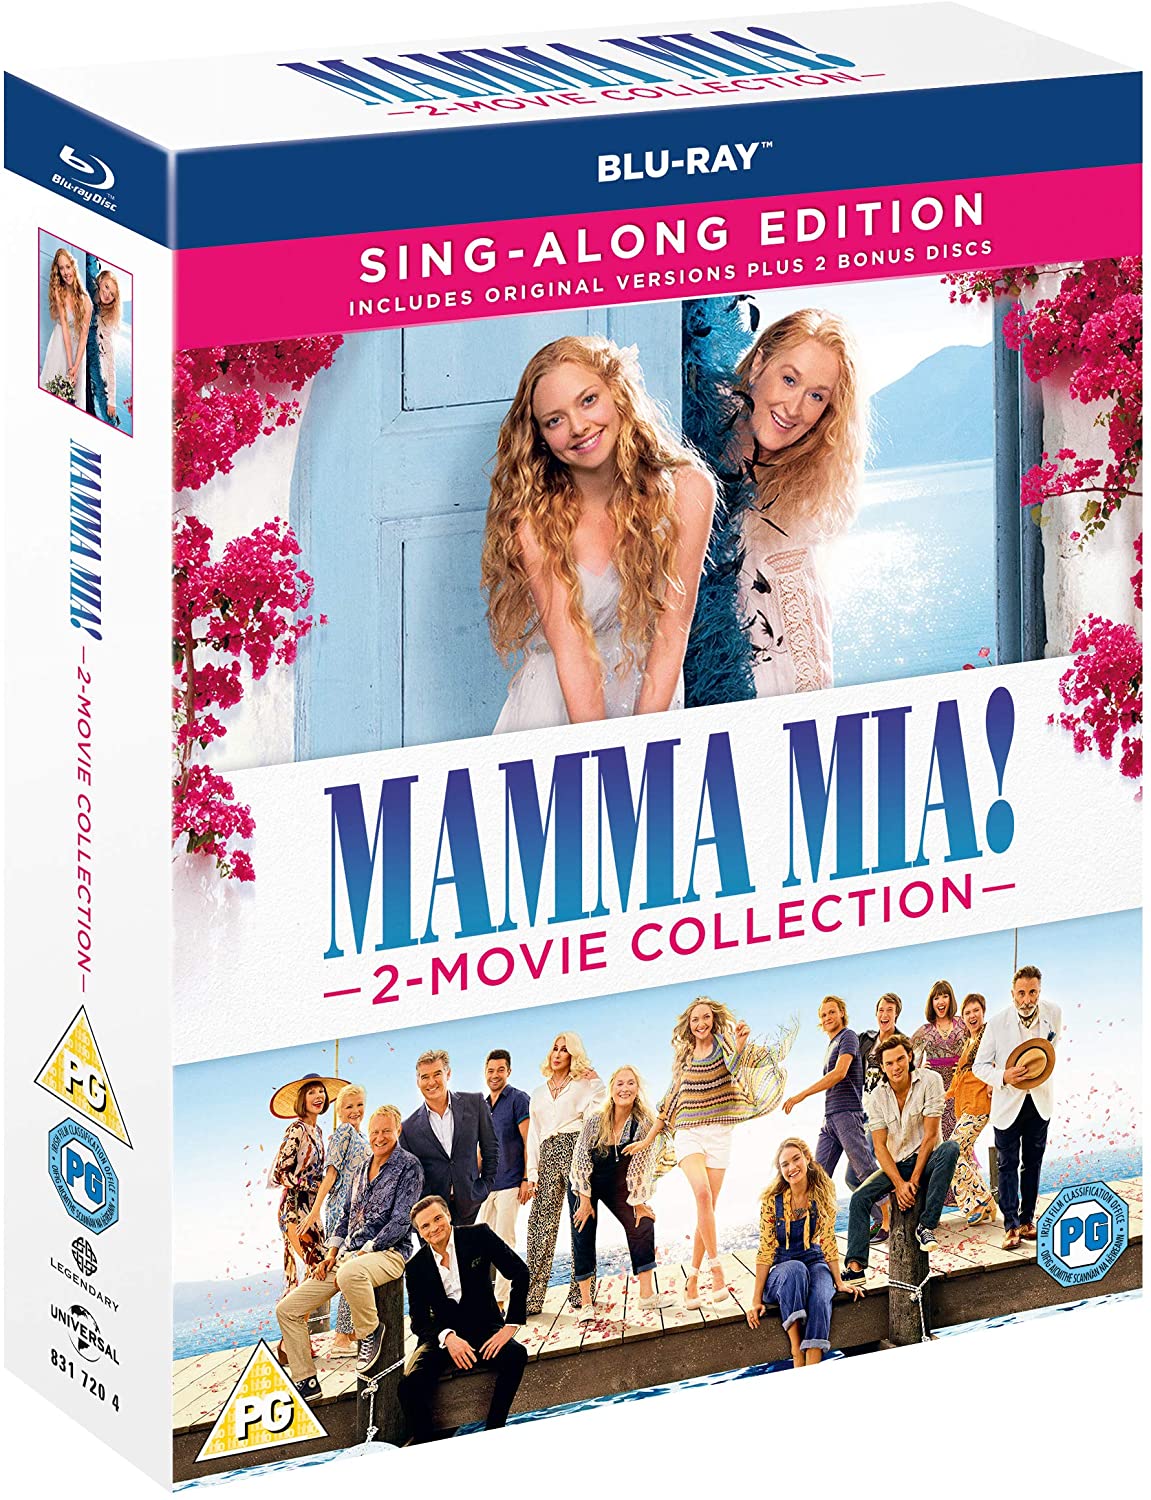 Mamma Mia! 2-Movie Collection (Blu-ray)